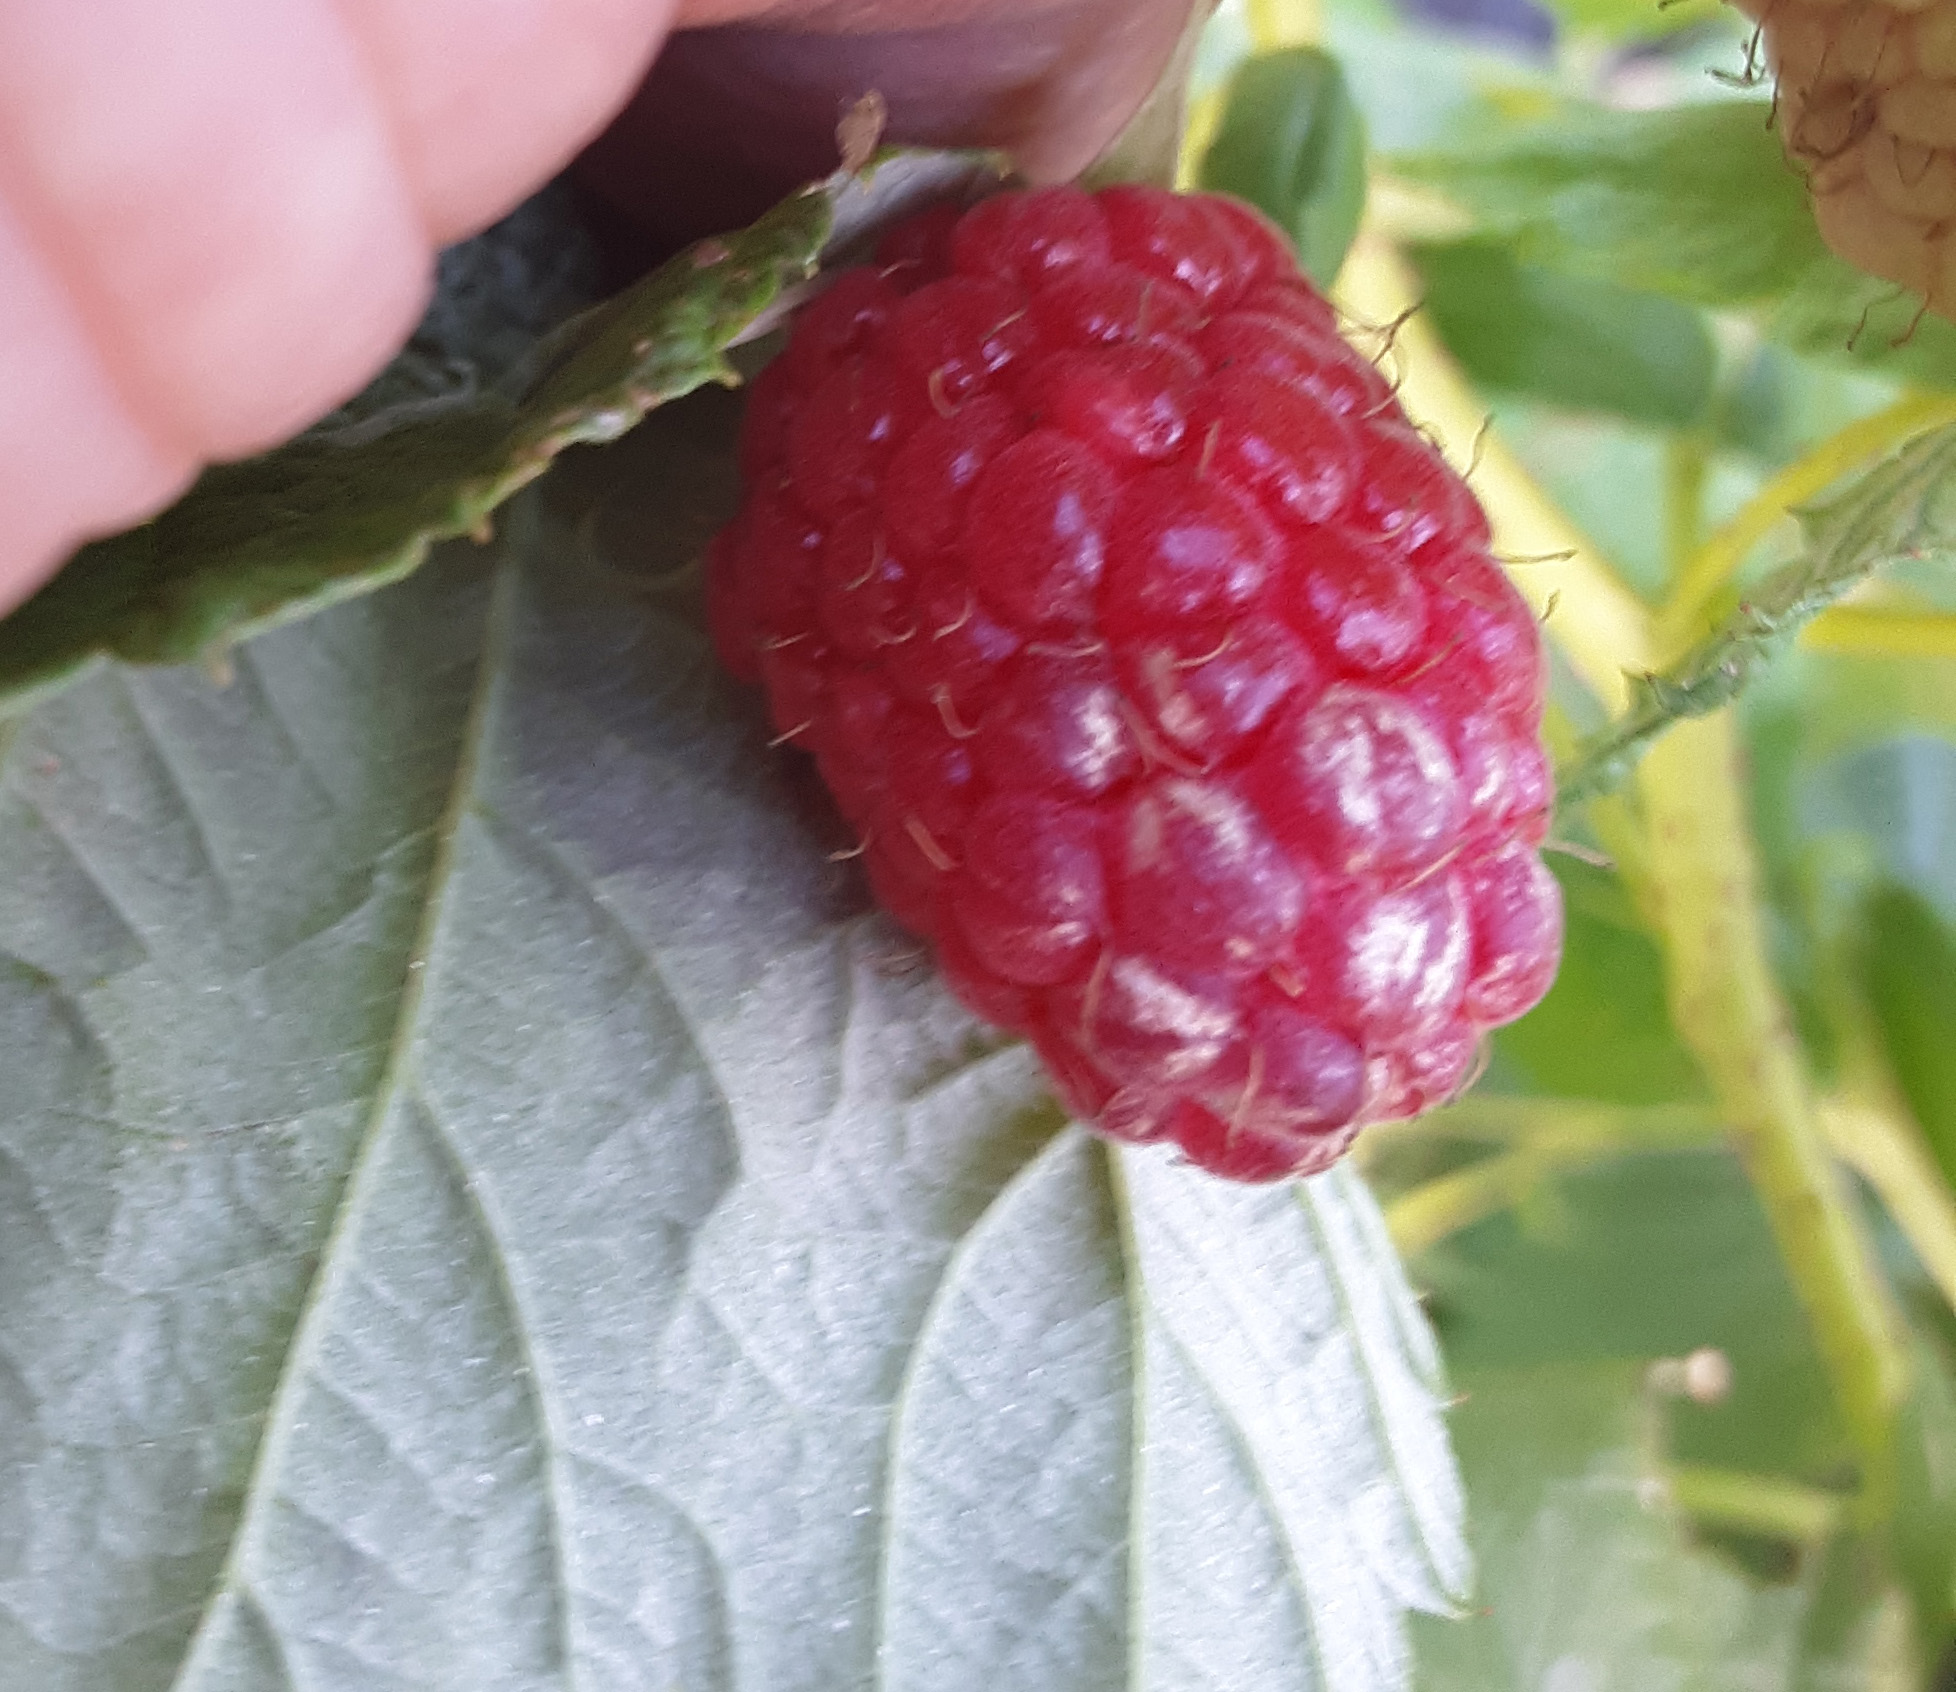 Sunscald on raspberries